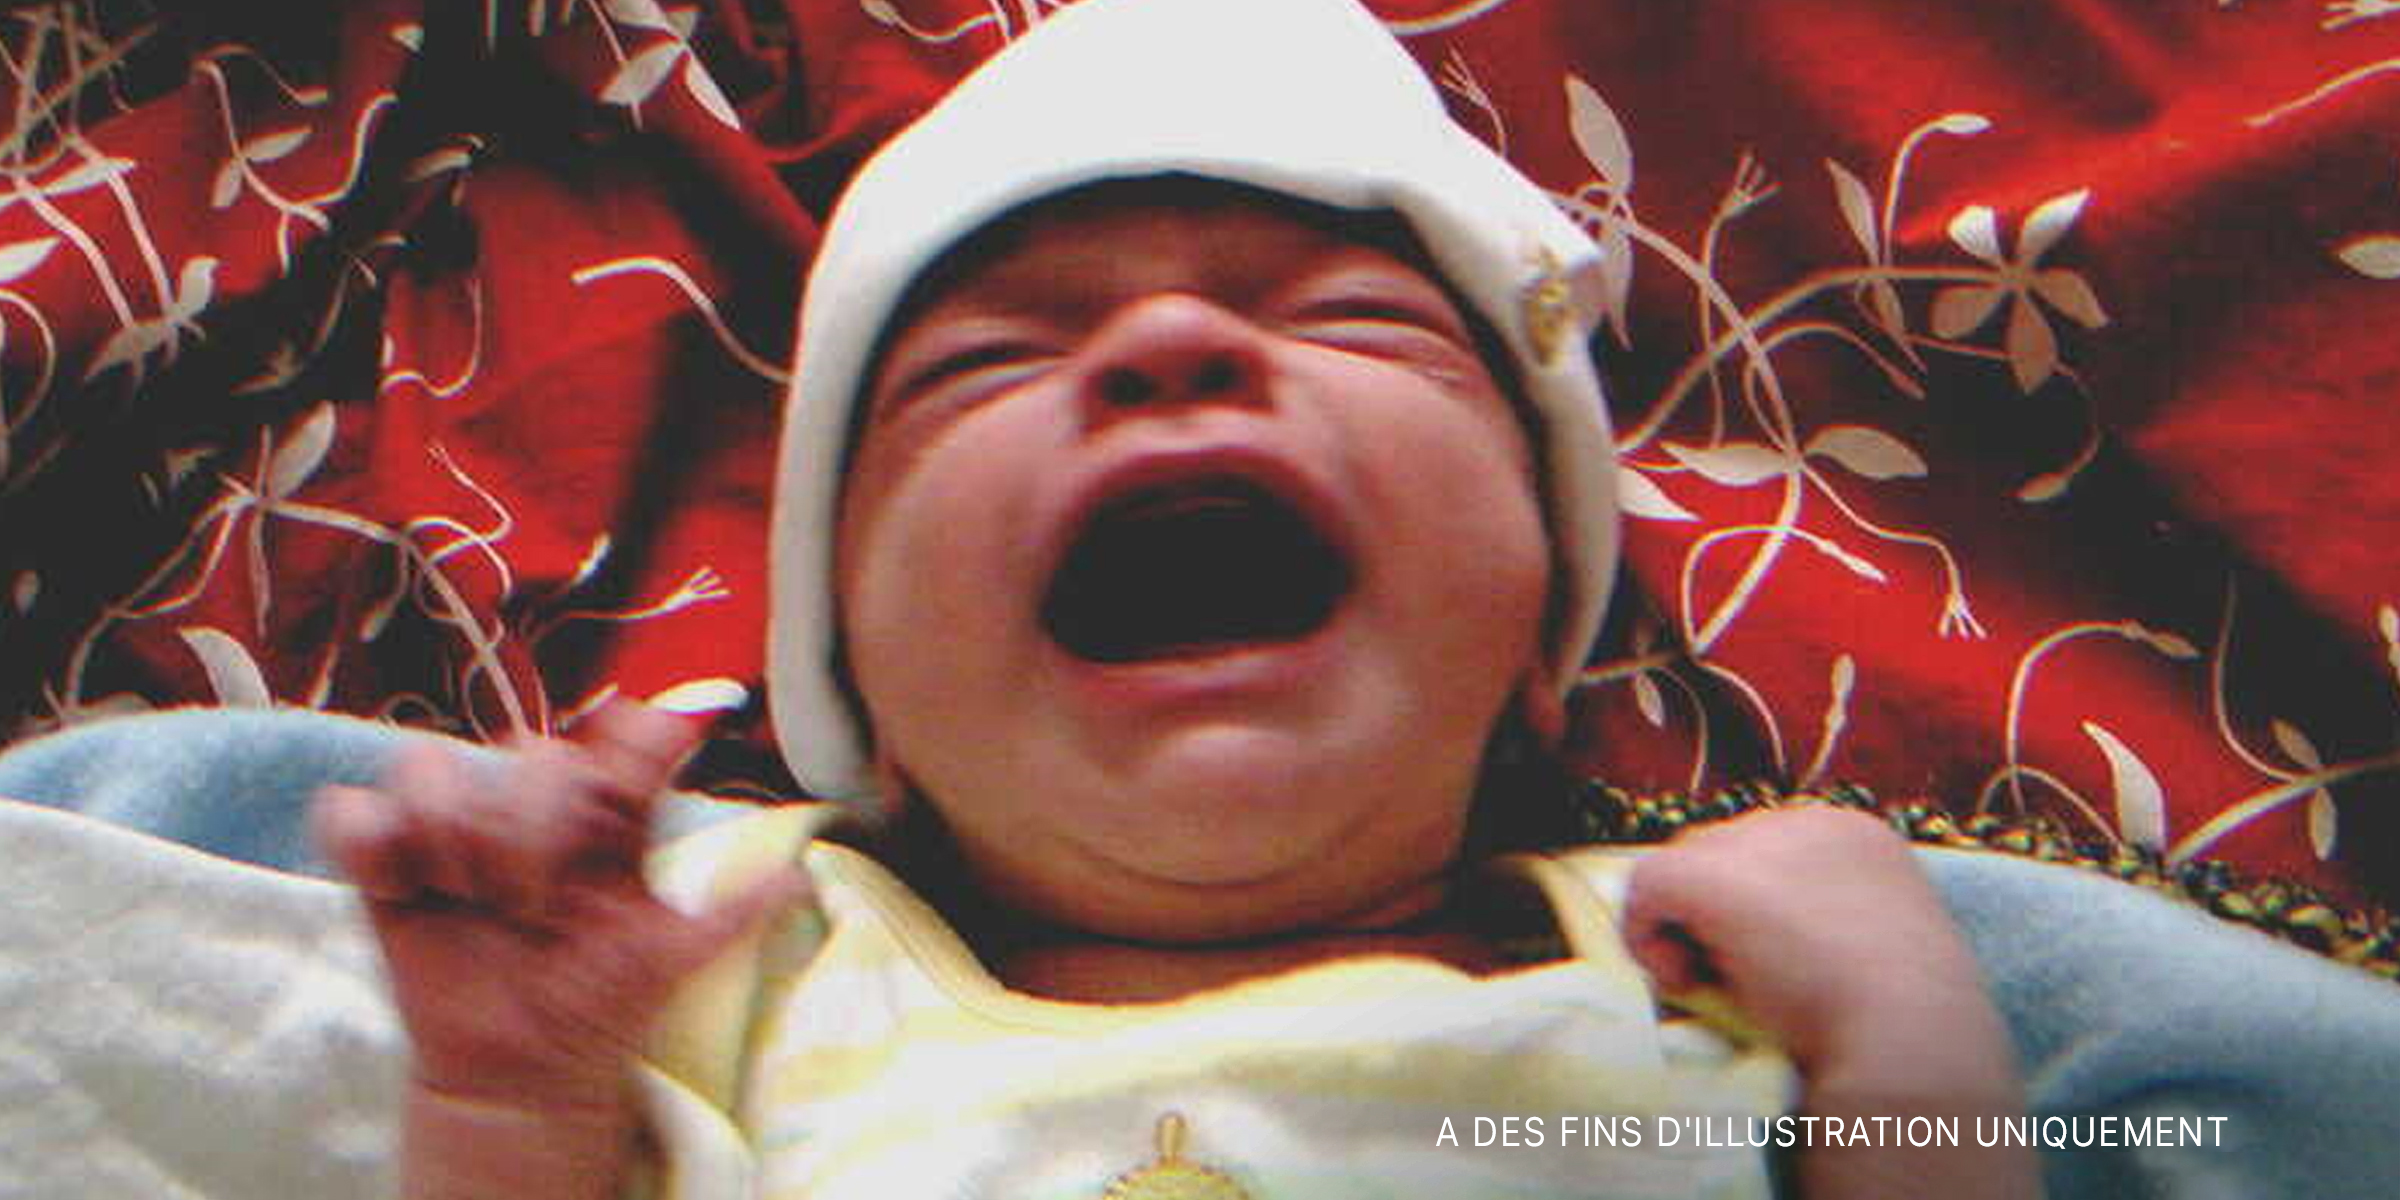 Un nouveau-né qui pleure | Source : Flickr.com/"Crying" (CC BY-SA 2.0) by rabble